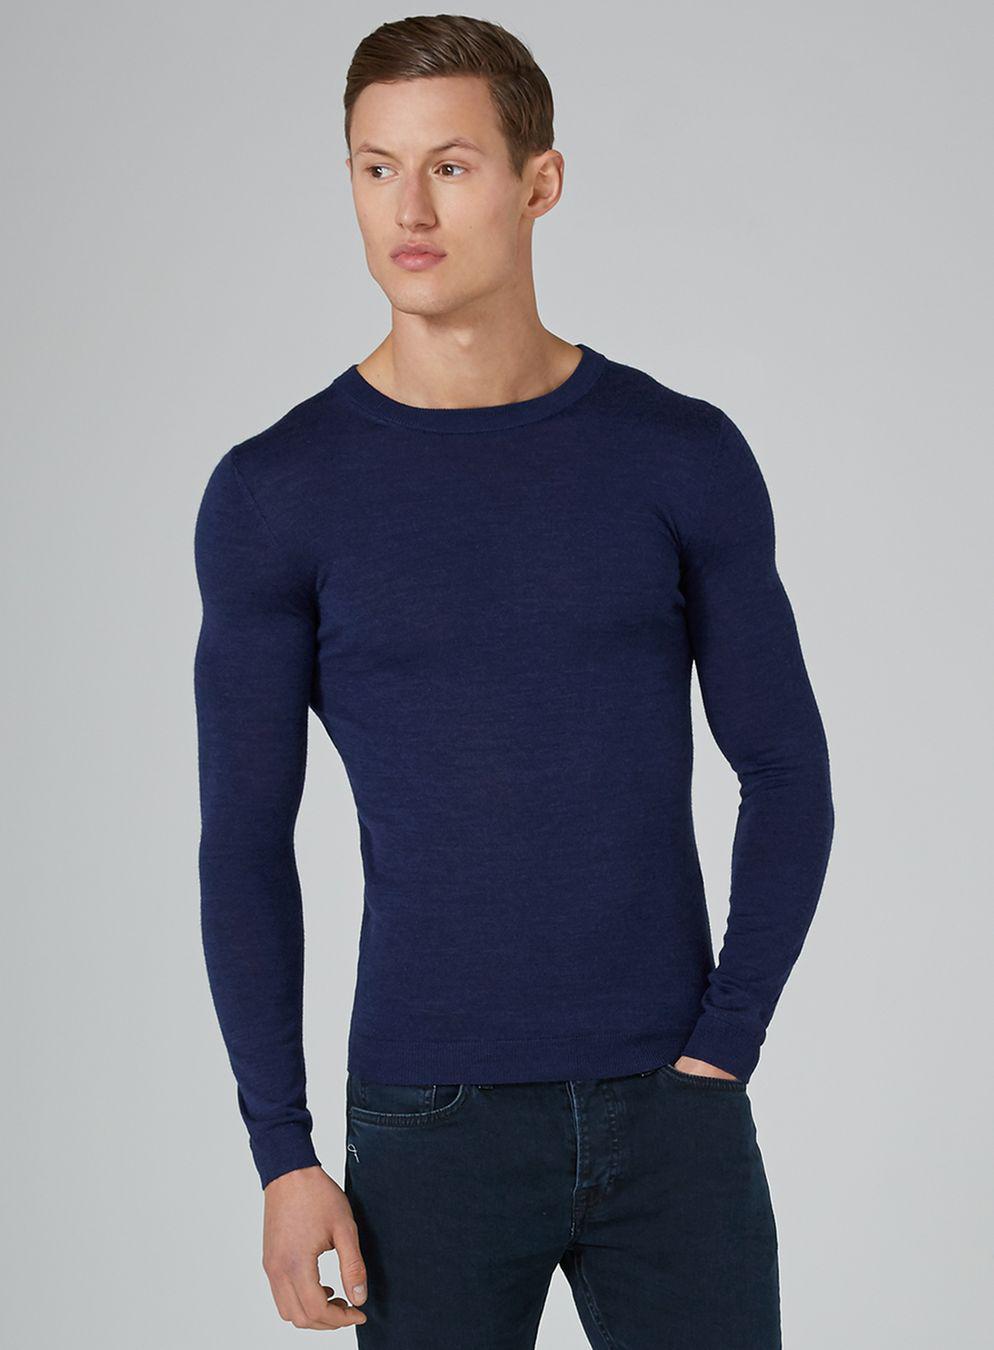 Lyst - Topman Navy Muscle Fit Merino Sweater in Blue for Men